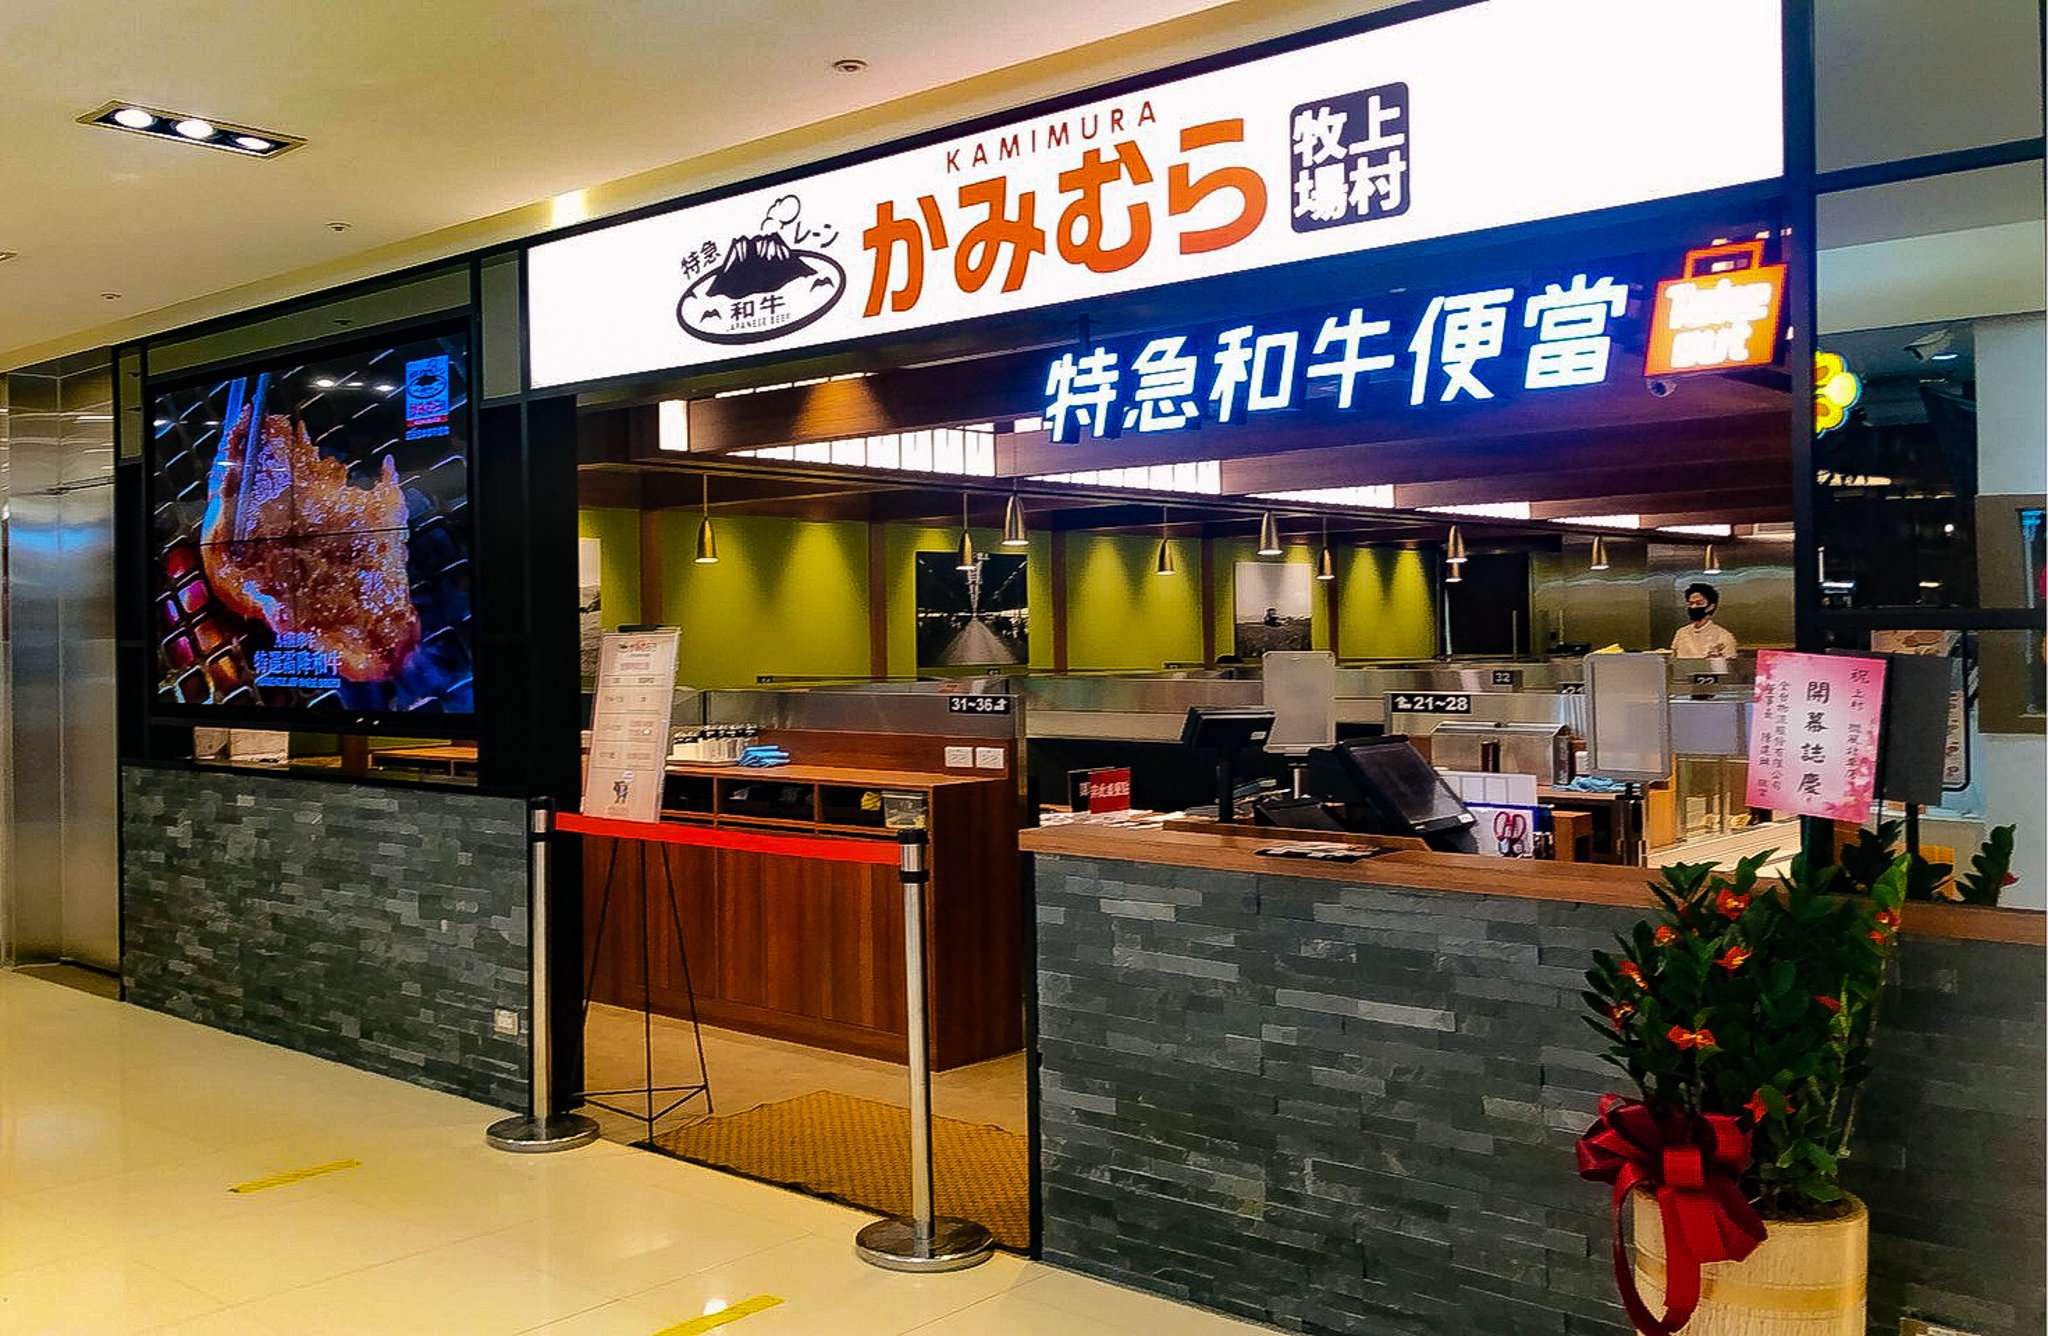 ワタミの焼肉事業 かみむら牧場 海外1号店が台湾 台北市にオープン ワタミ株式会社のプレスリリース